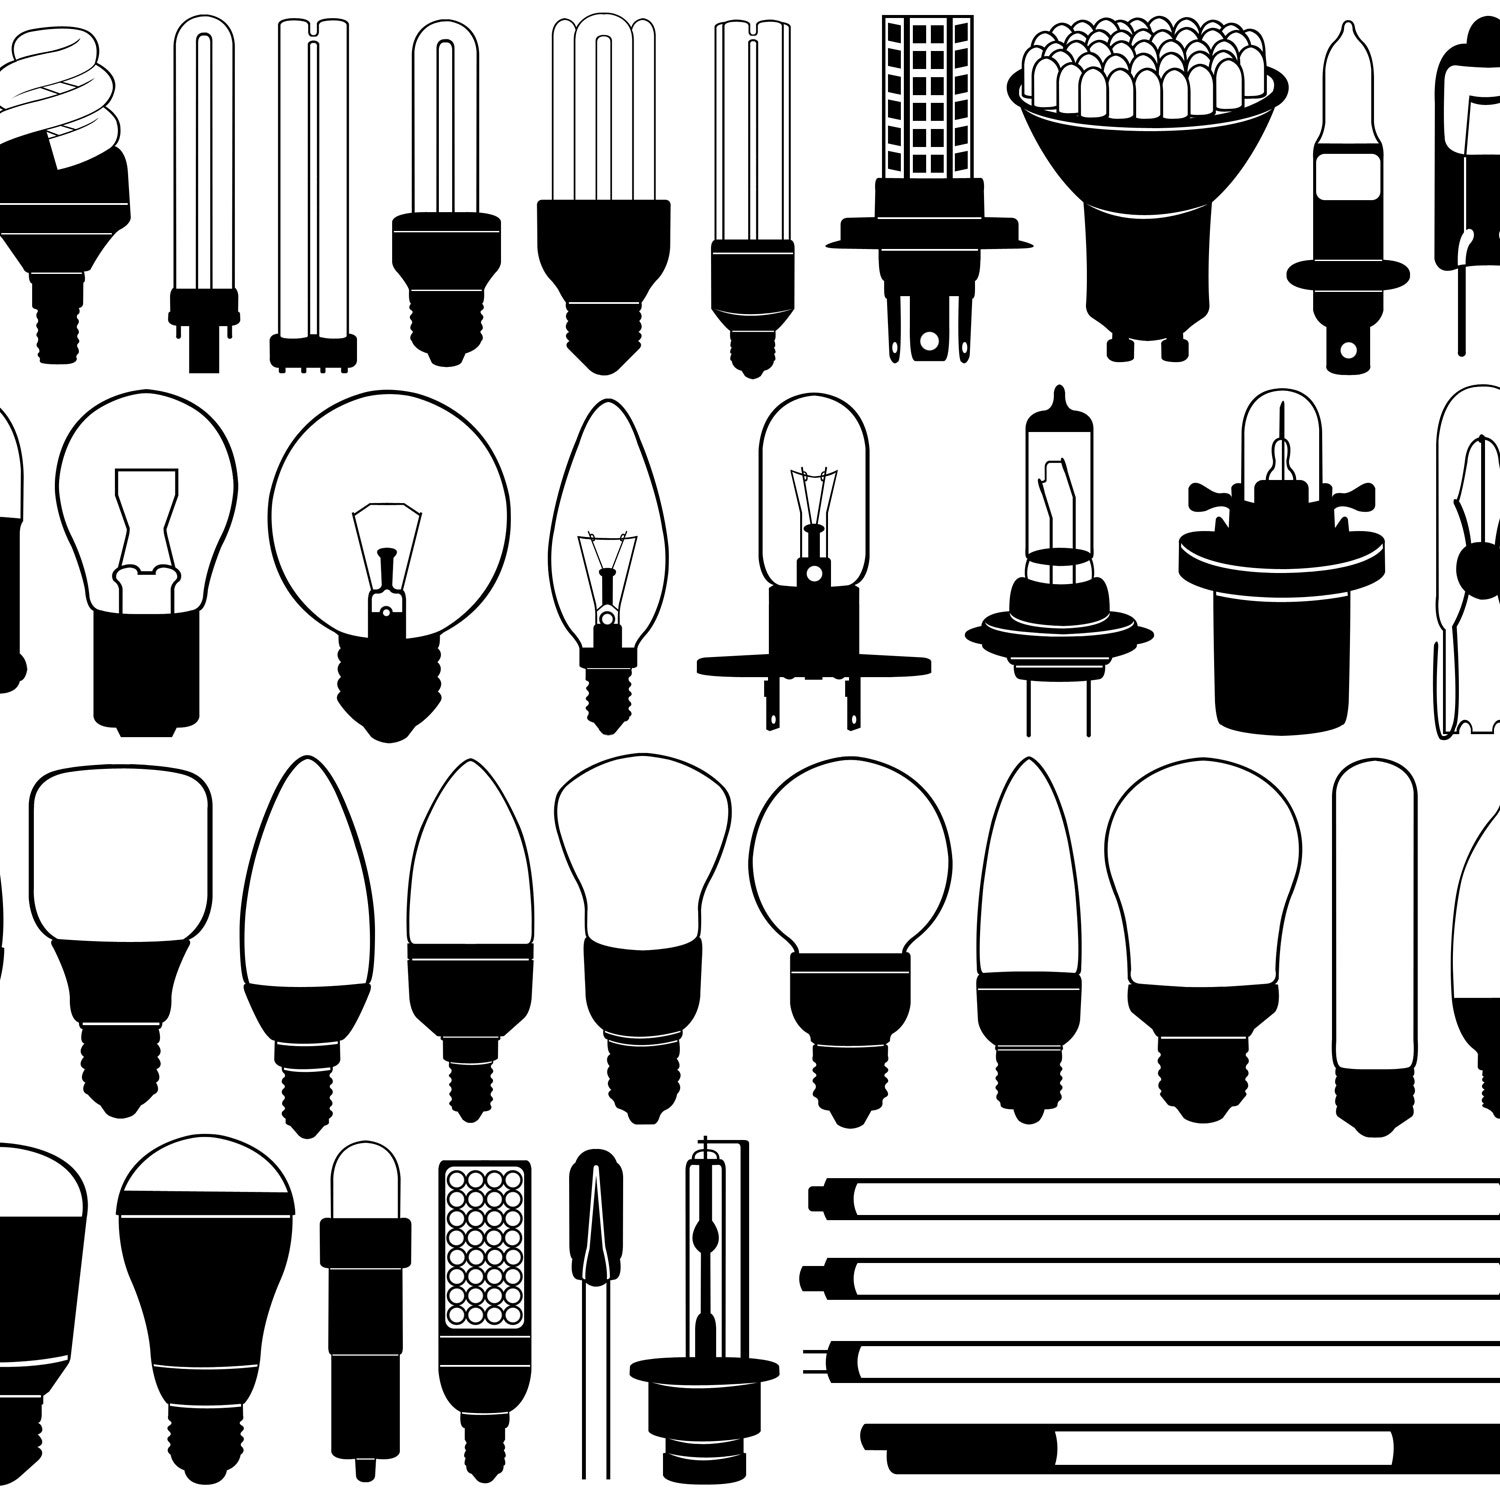 Виды и характеристики цоколей в лампочках